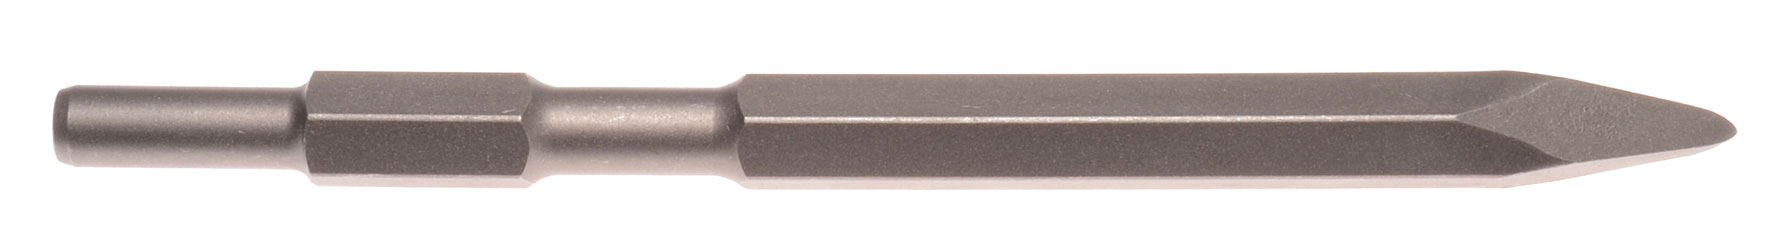 Spitzmeißel Schaft 21 mm 6-kant